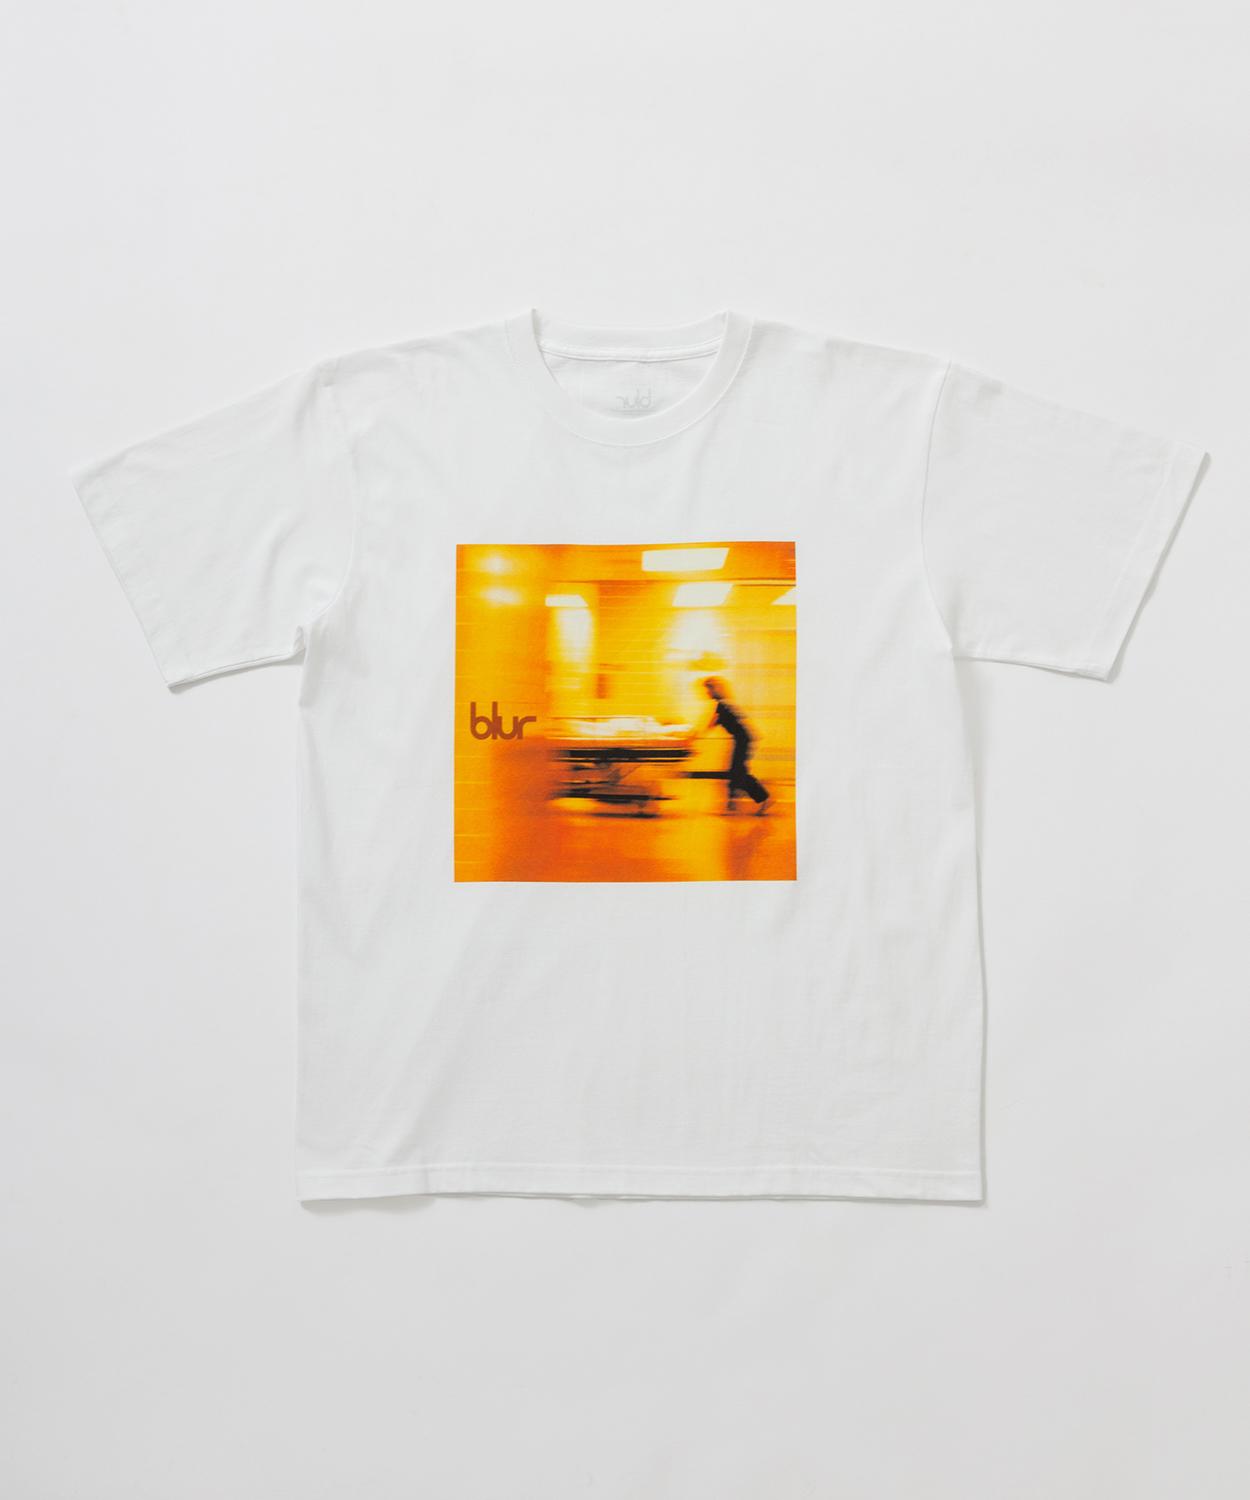 ロックバンド「Blur」の6種類のTシャツが発売！ - Slide:5